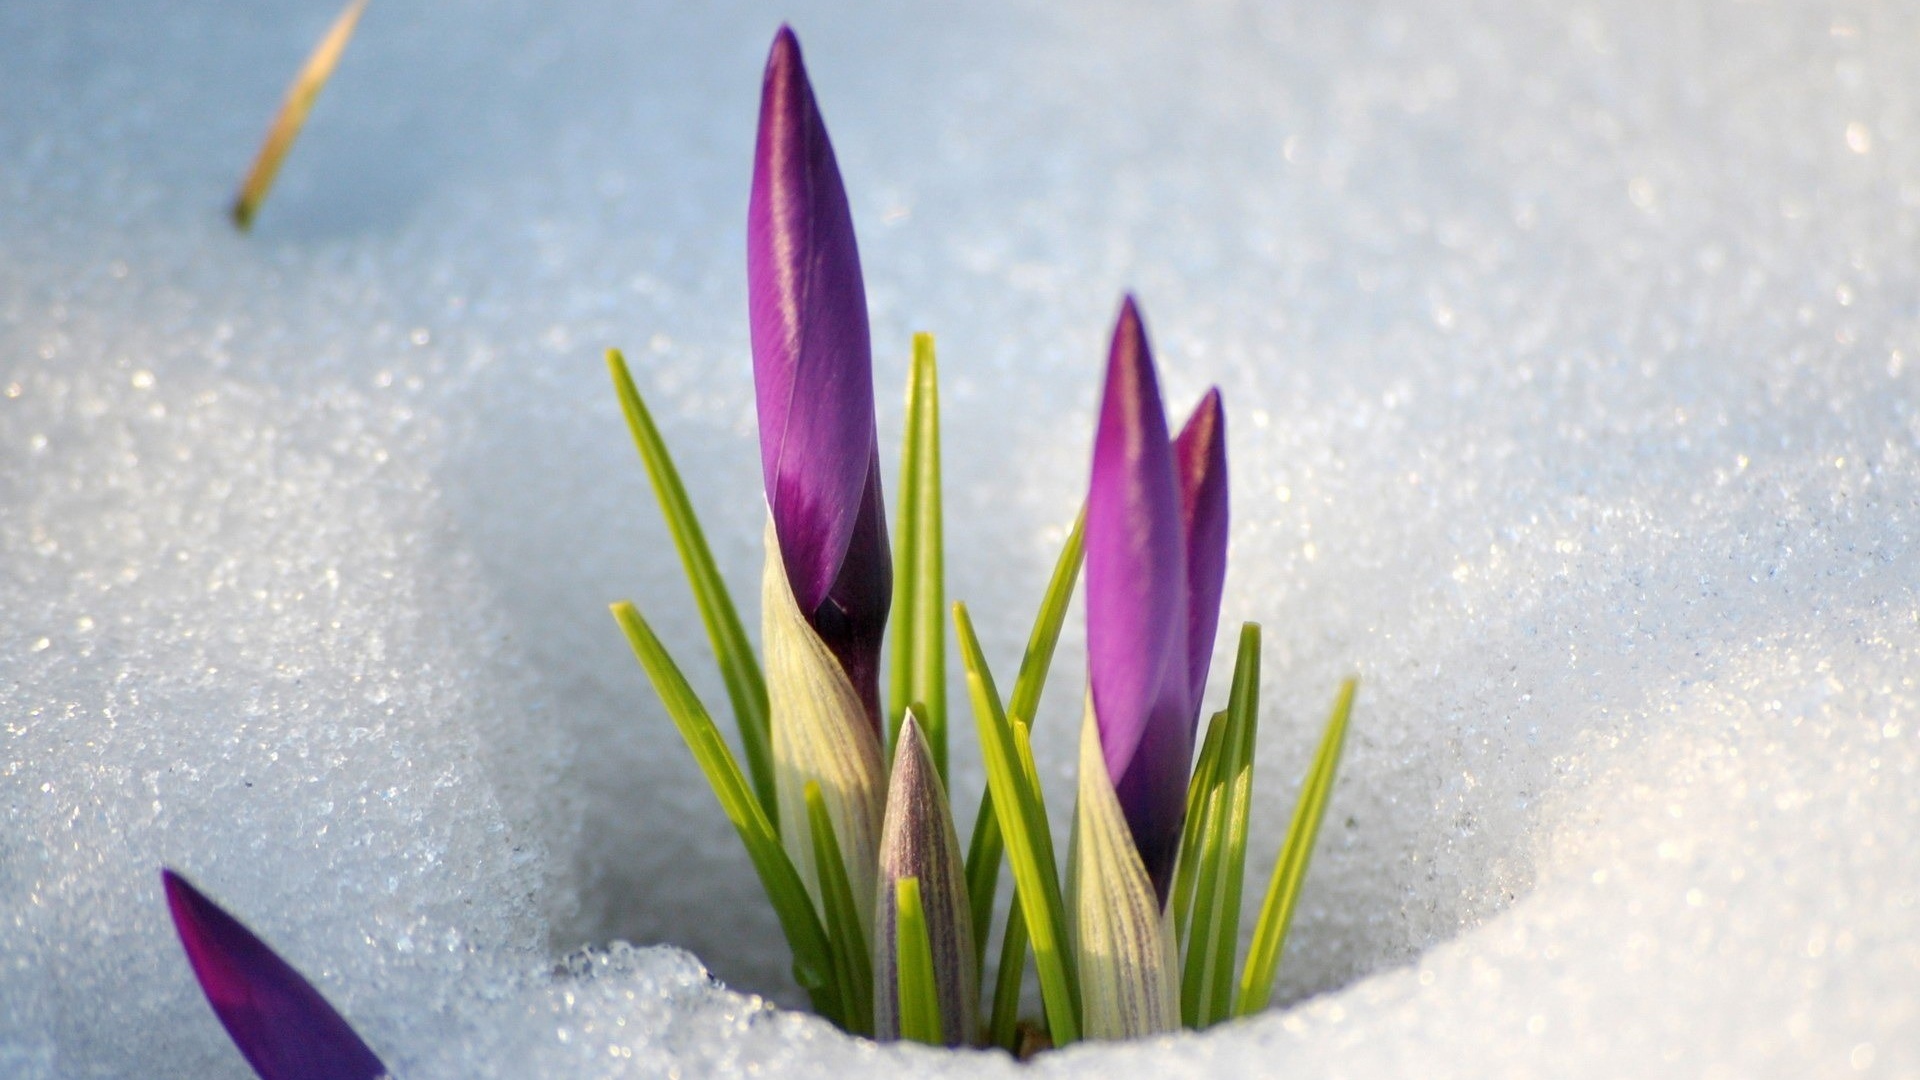 Цветы крокуса пробиваются сквозь снег весной